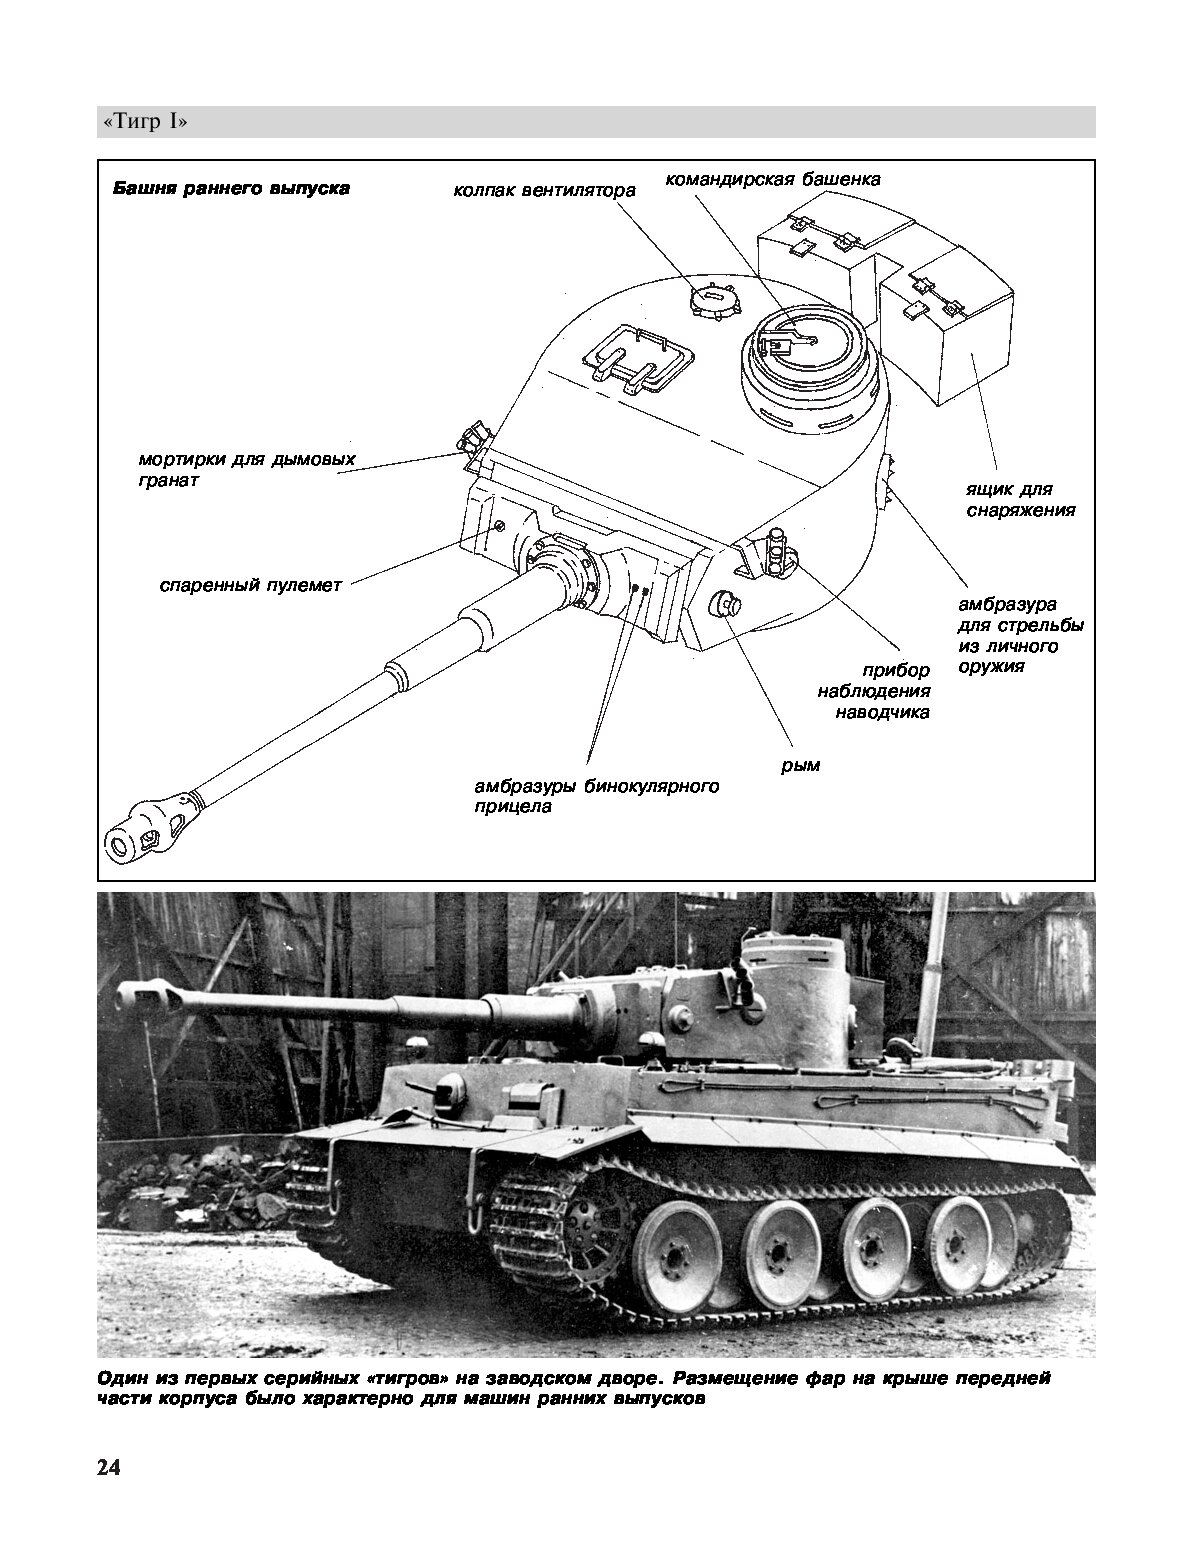 Командирская башенка танка тигр